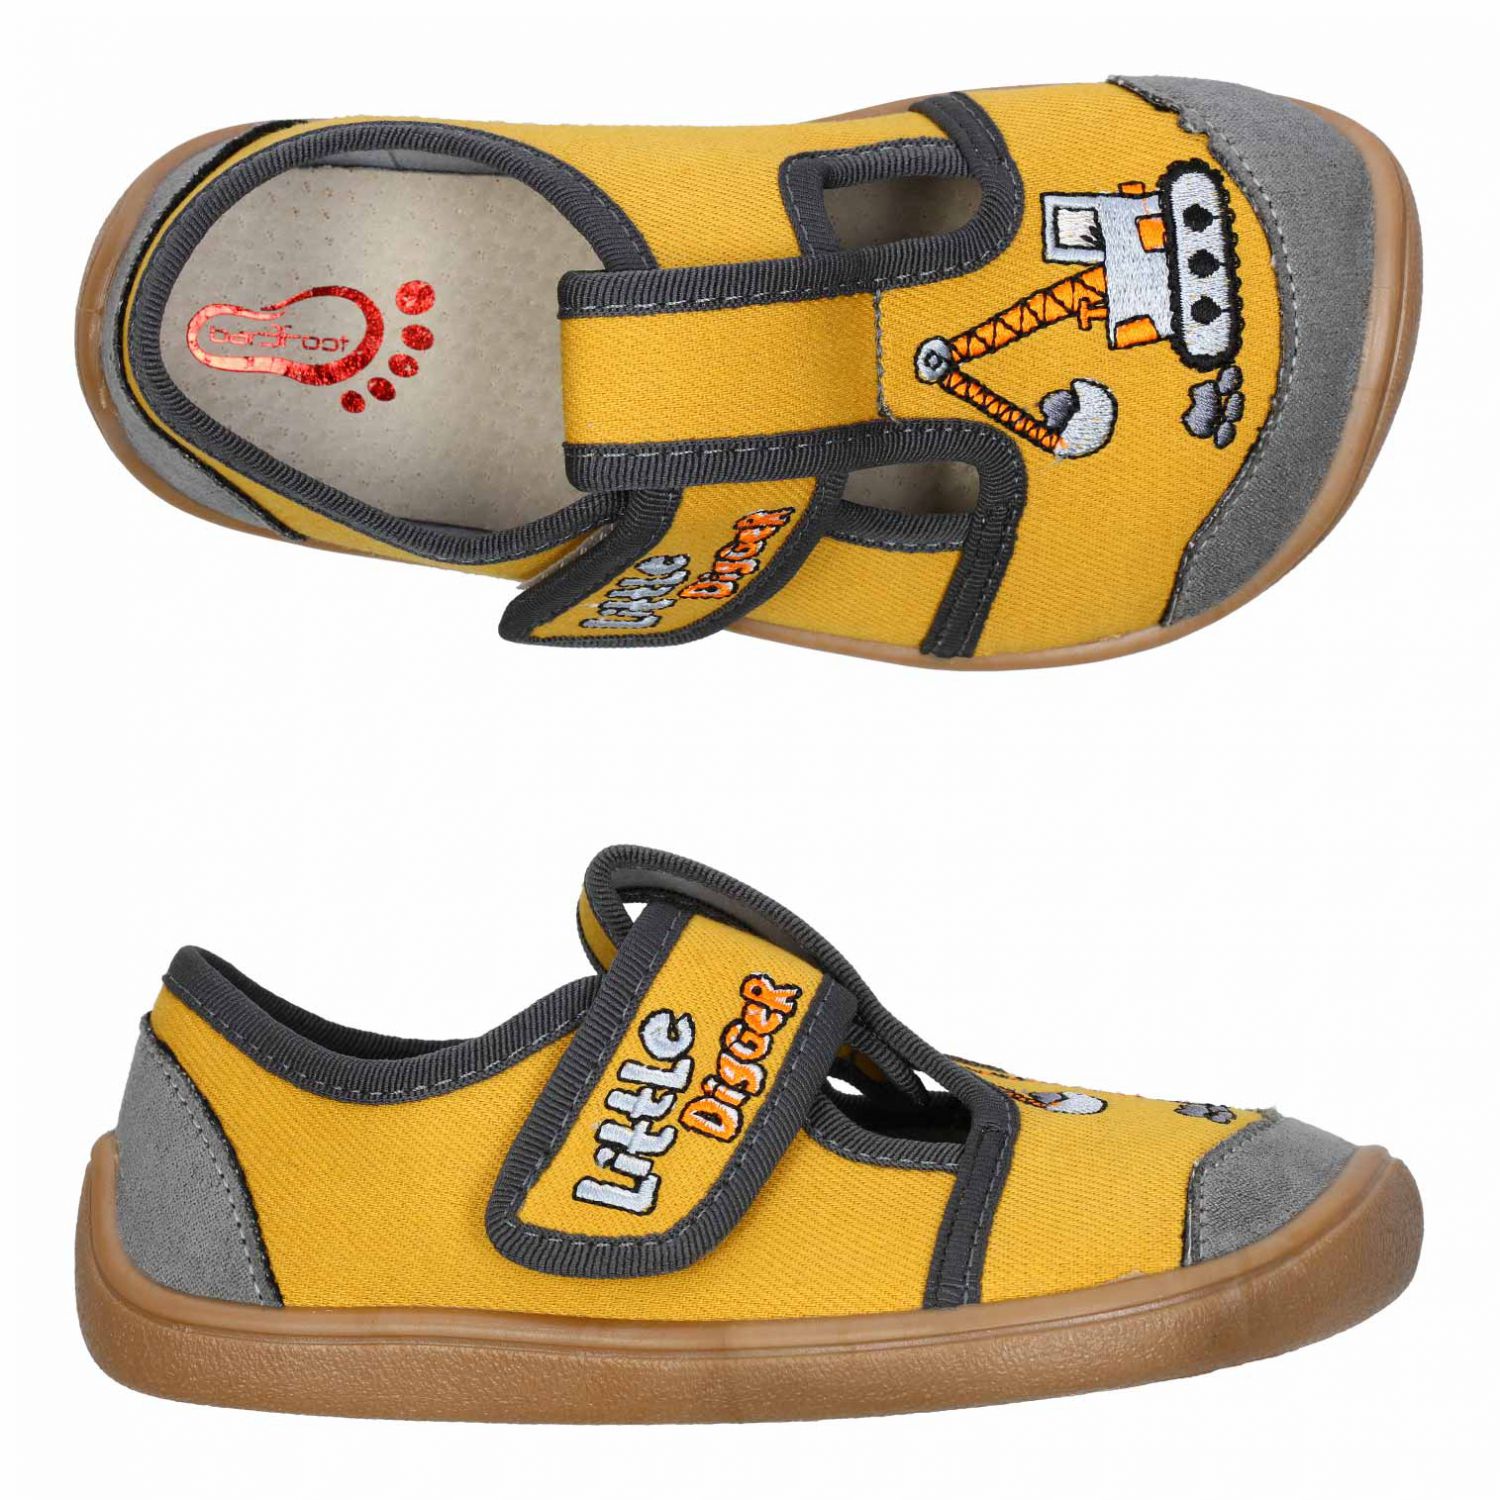 3F Barefoot papuče žlté bager